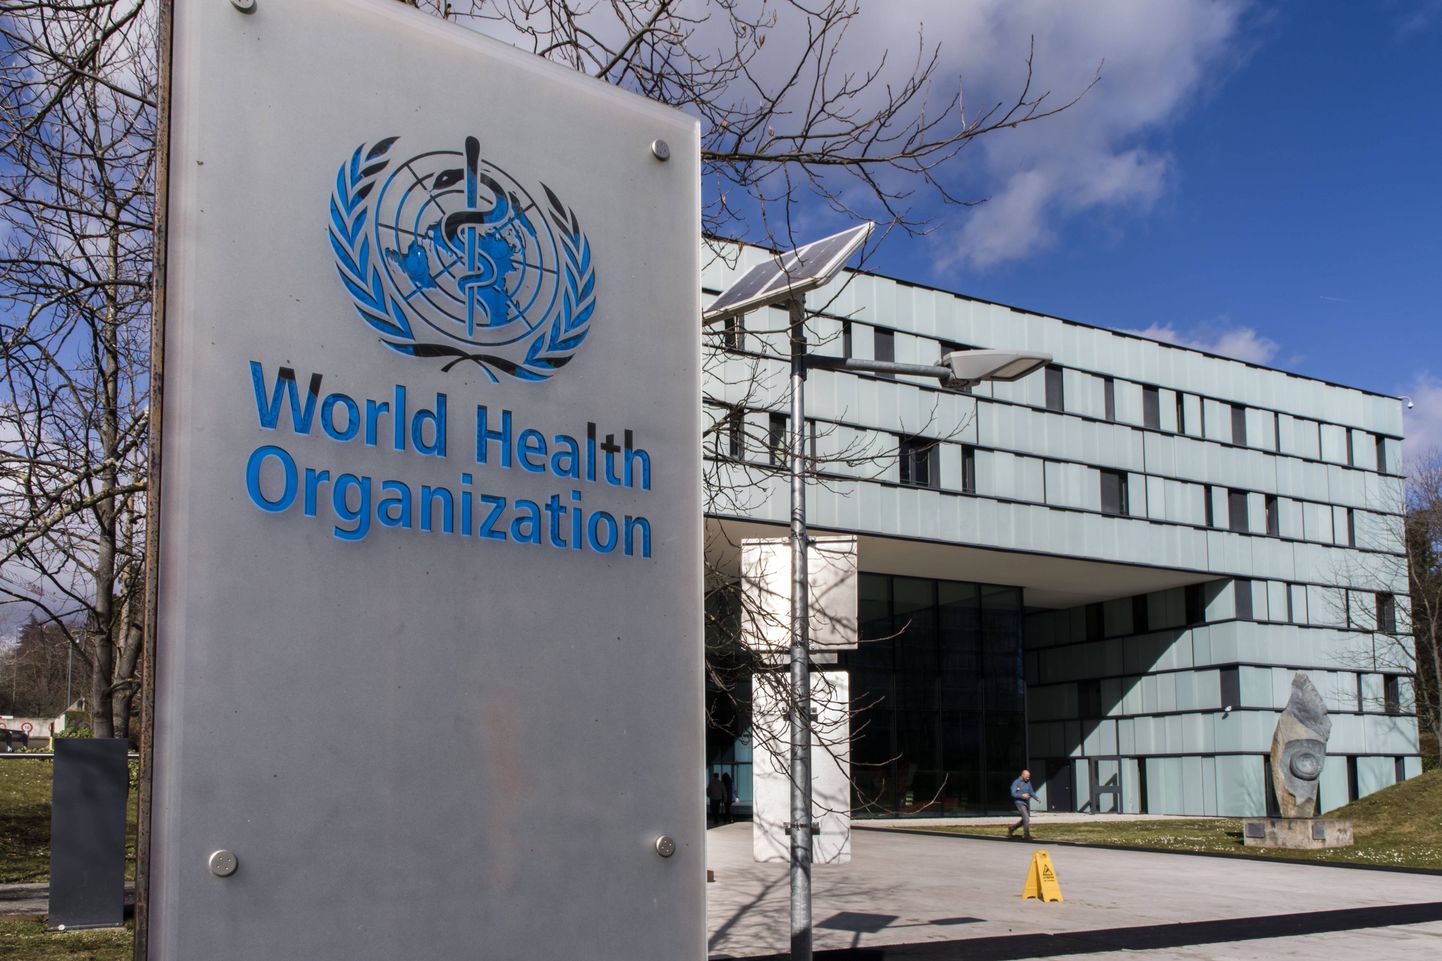 Maailma Terviseorganisatsiooni (WHO) peakorter Genfis.